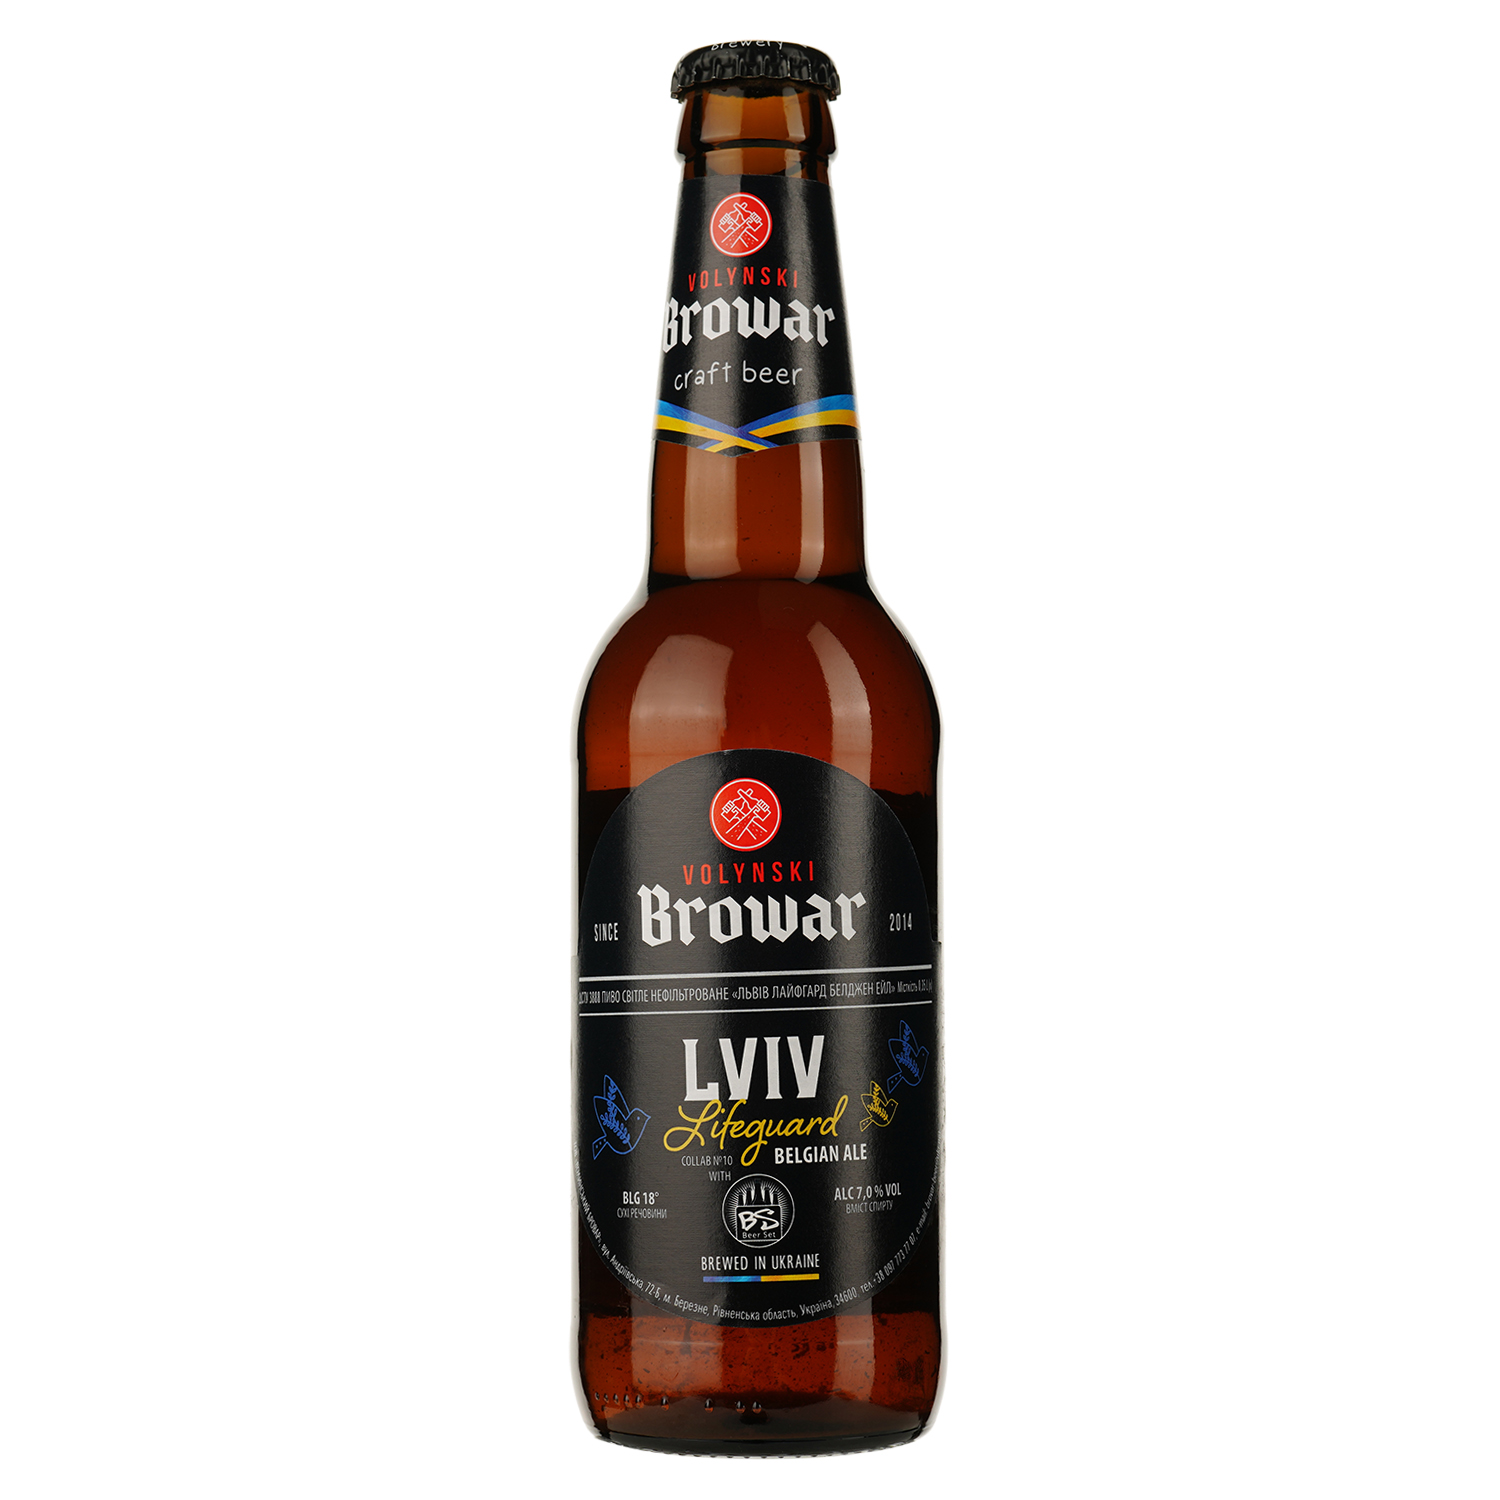 Пиво Volynski Browar Lviv Lifeguard, светлое, нефильтрованное, 7%, 0,35 л - фото 1